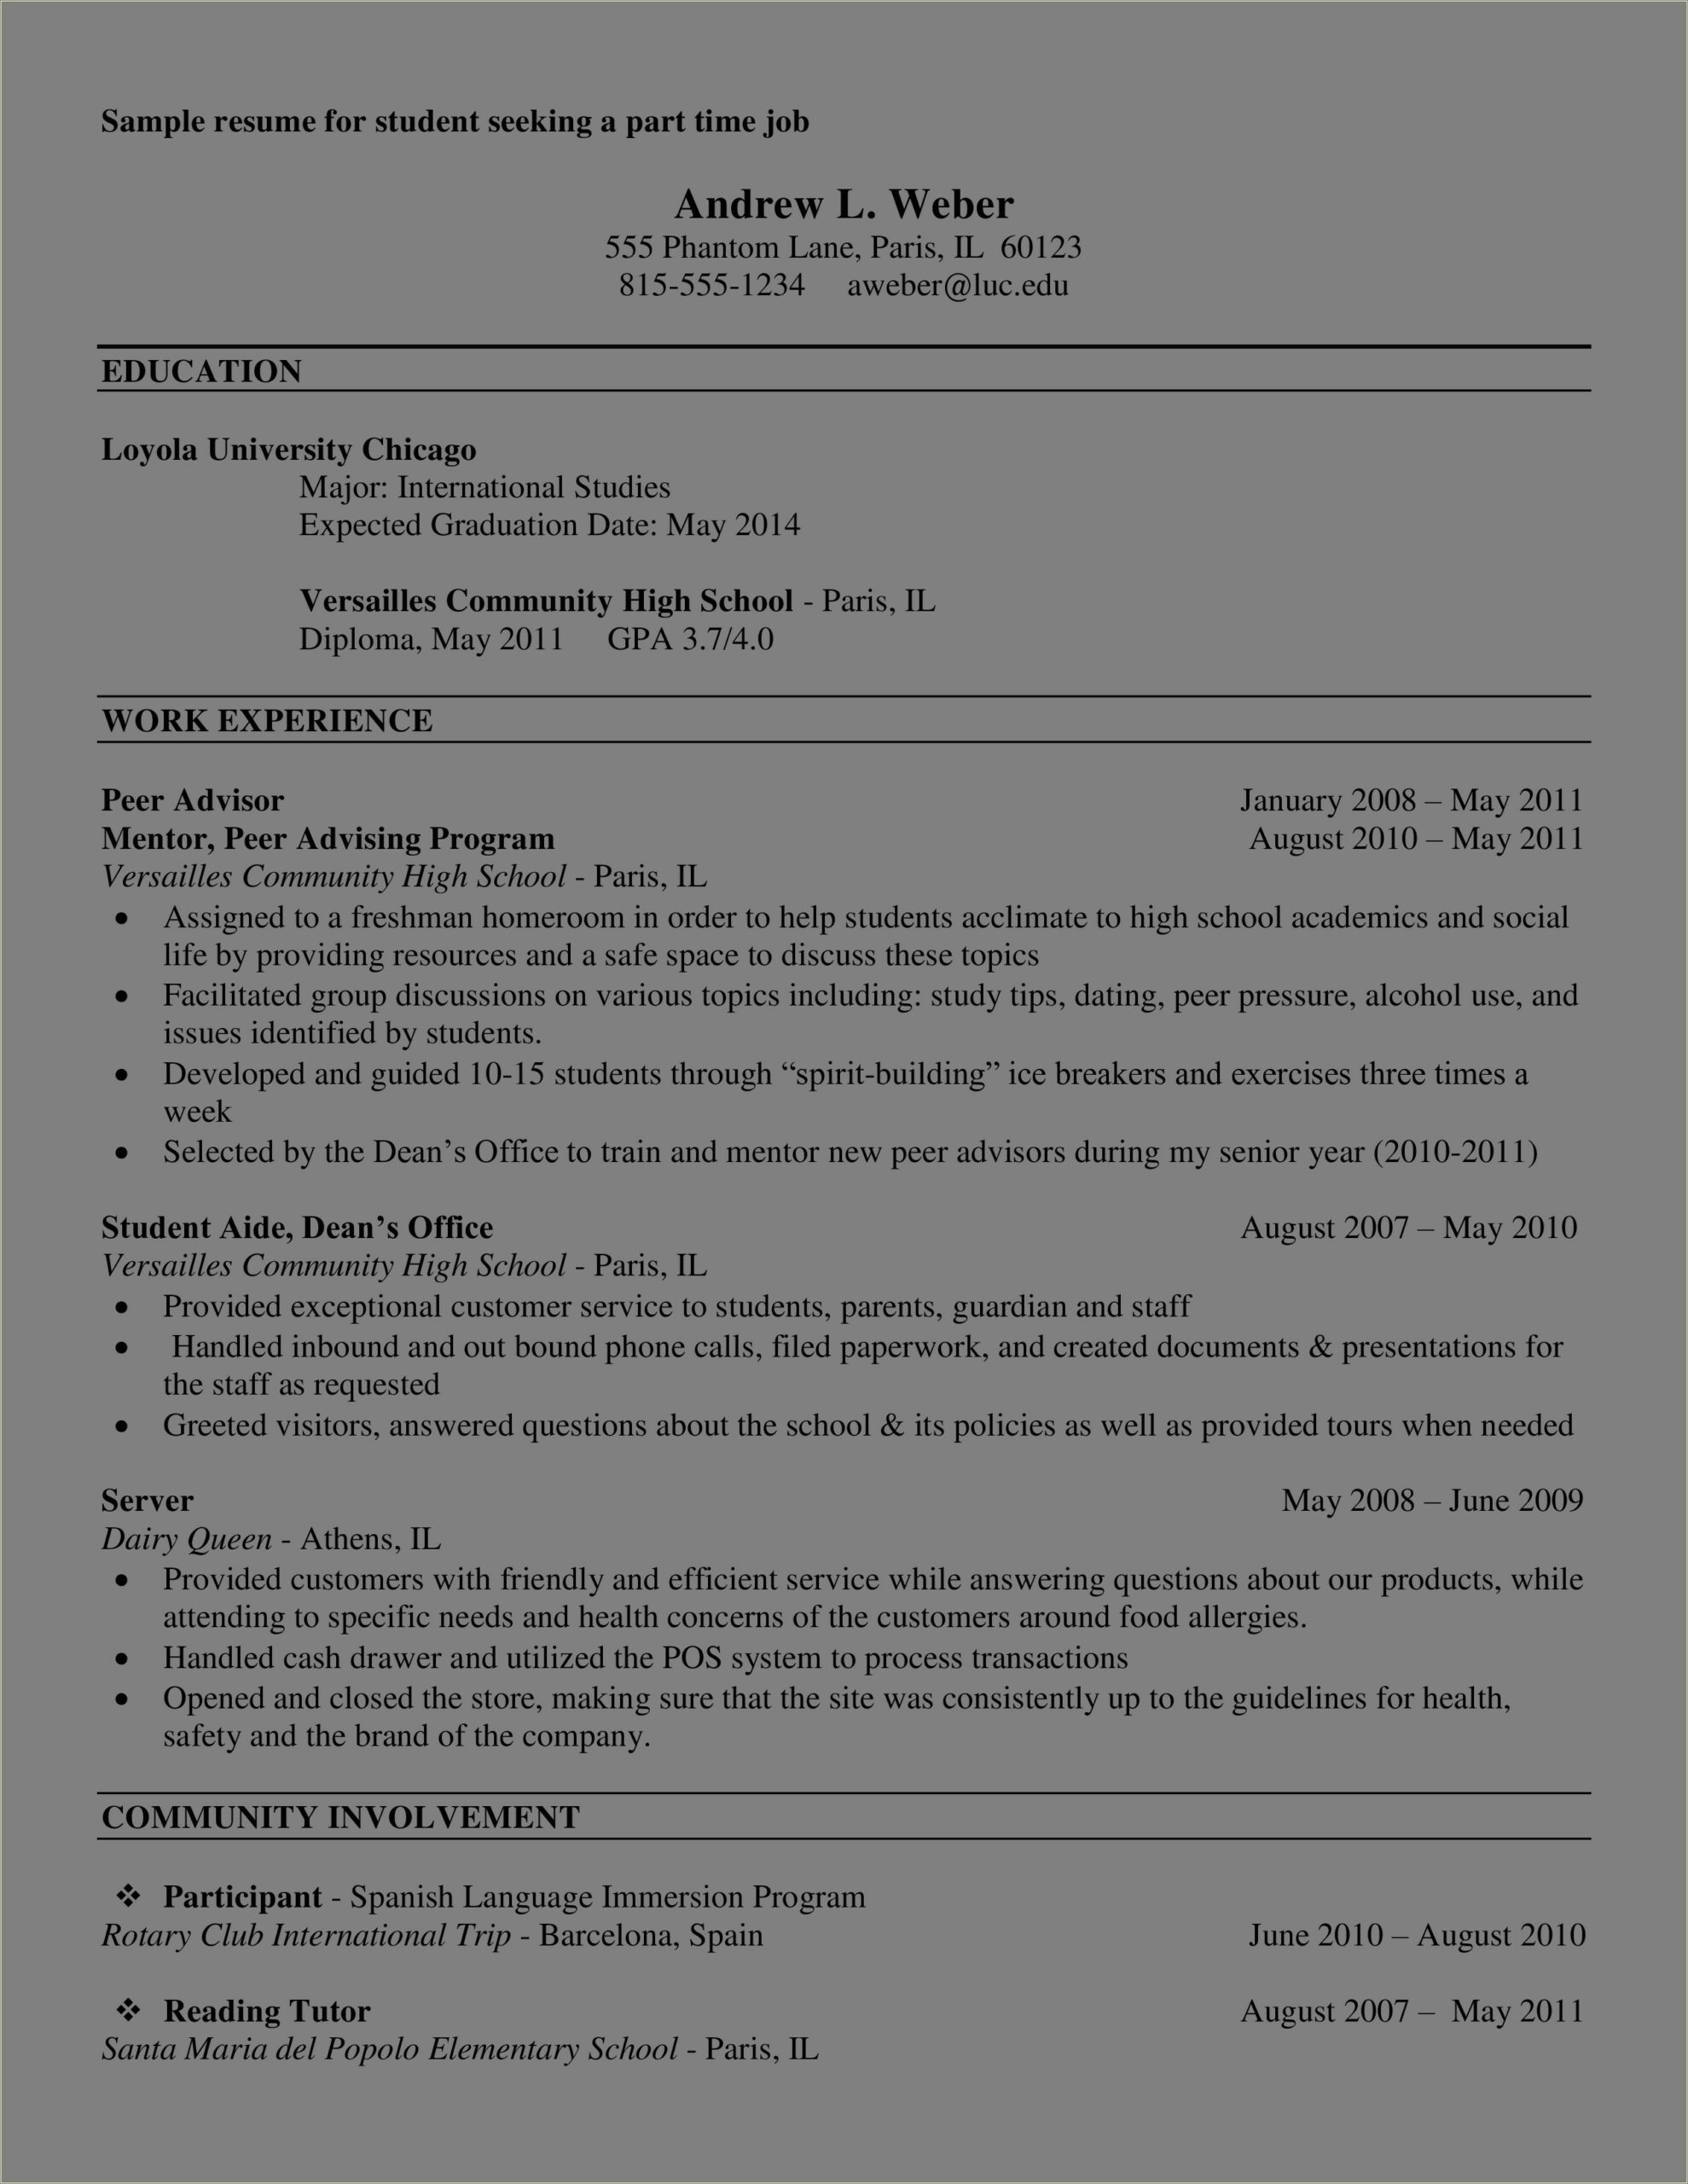 Sample Resume For Part Time Job In Restaurant